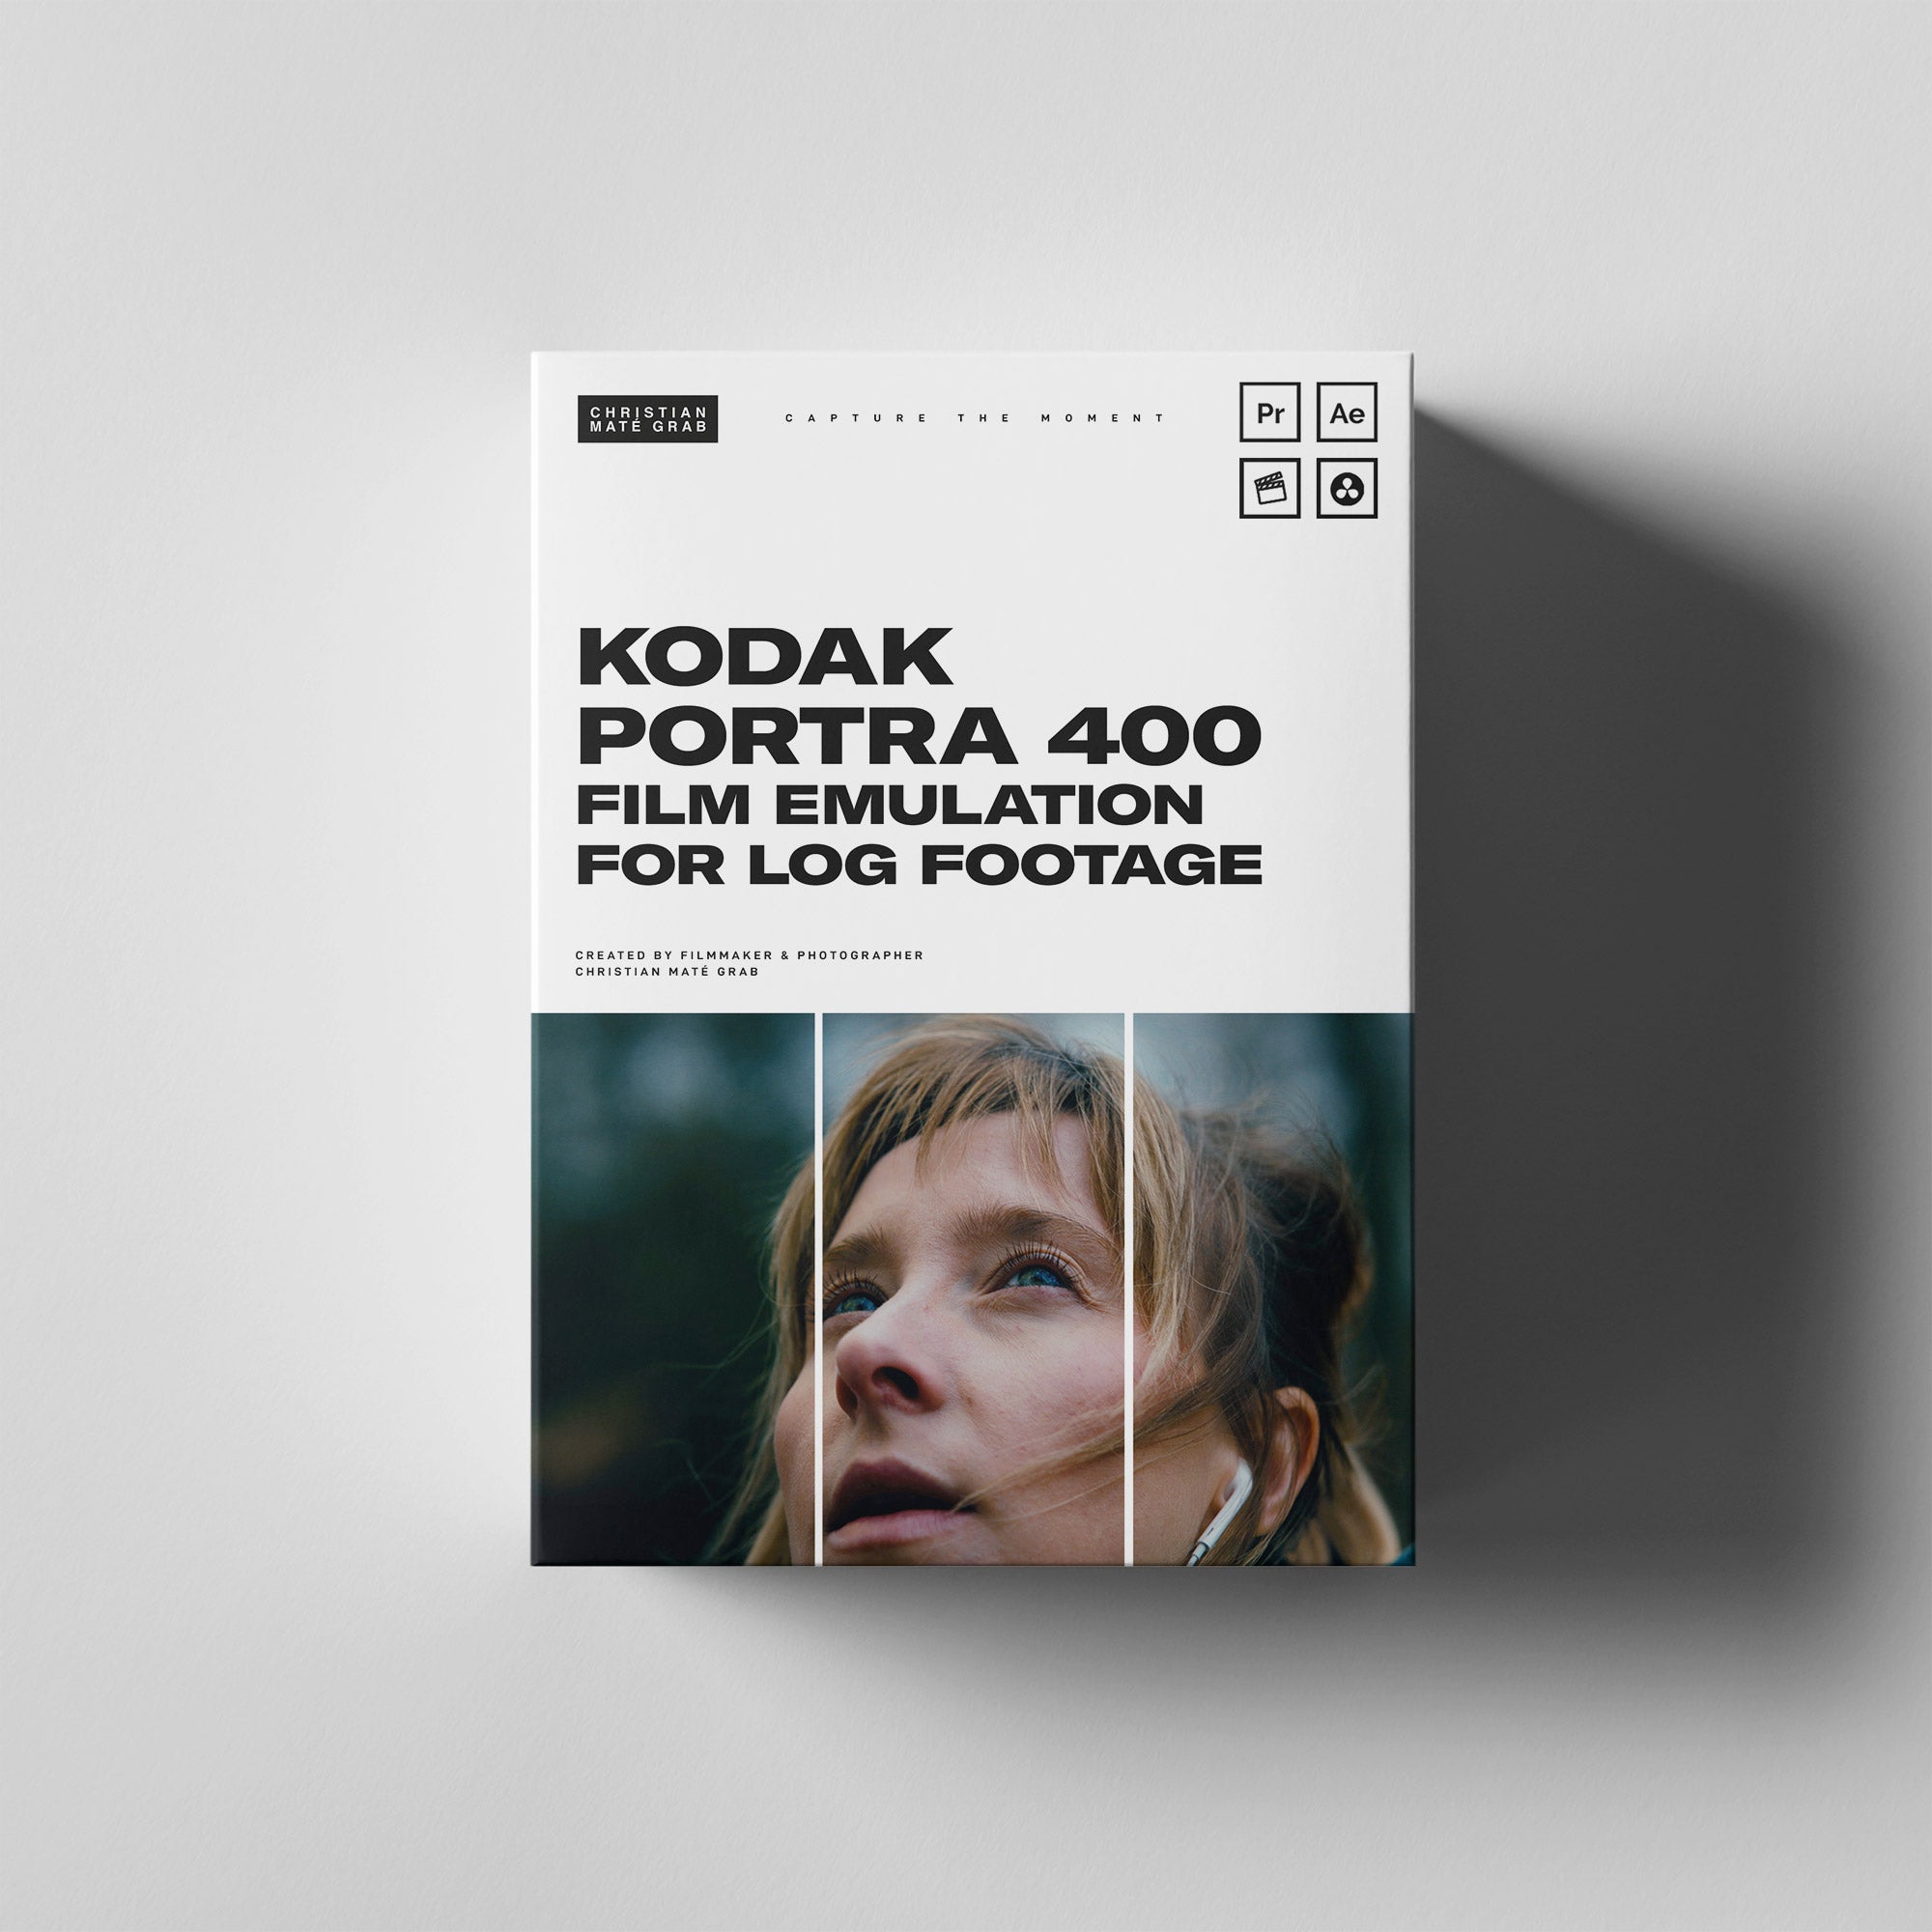 Kodak Film Emulation for LOG